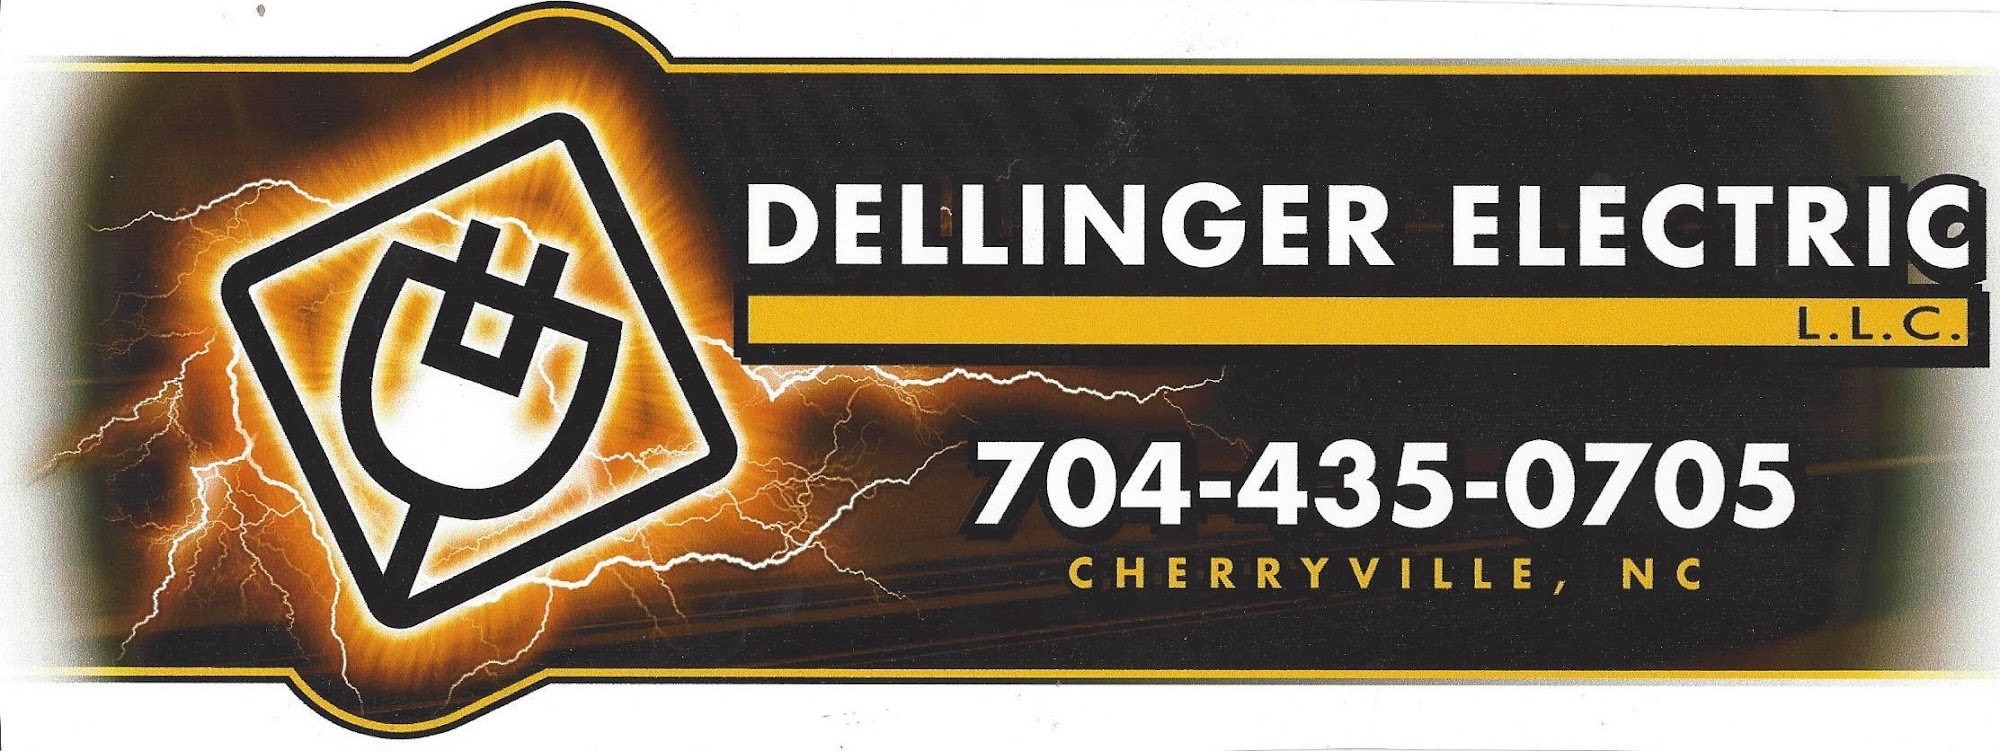 Dellinger Electric-Cherryville